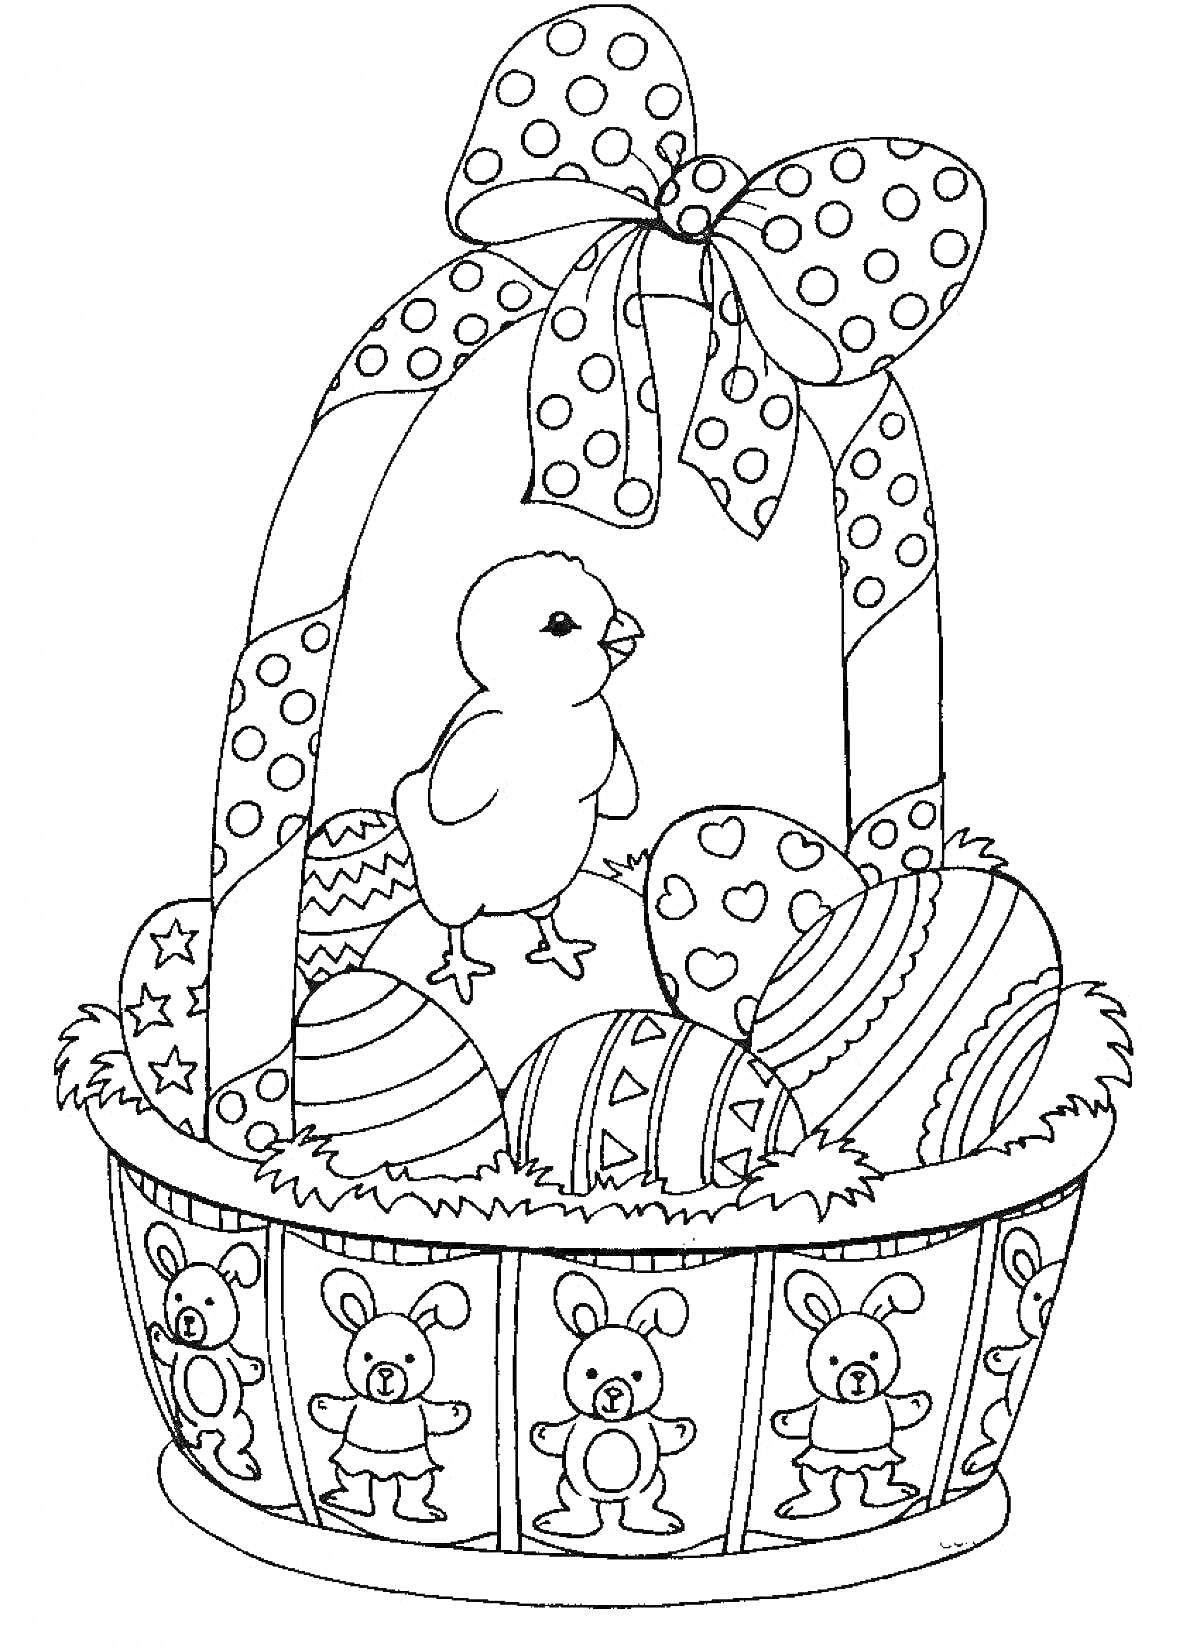 Раскраска Пасхальная корзина с цыпленком, яйцами и бантом